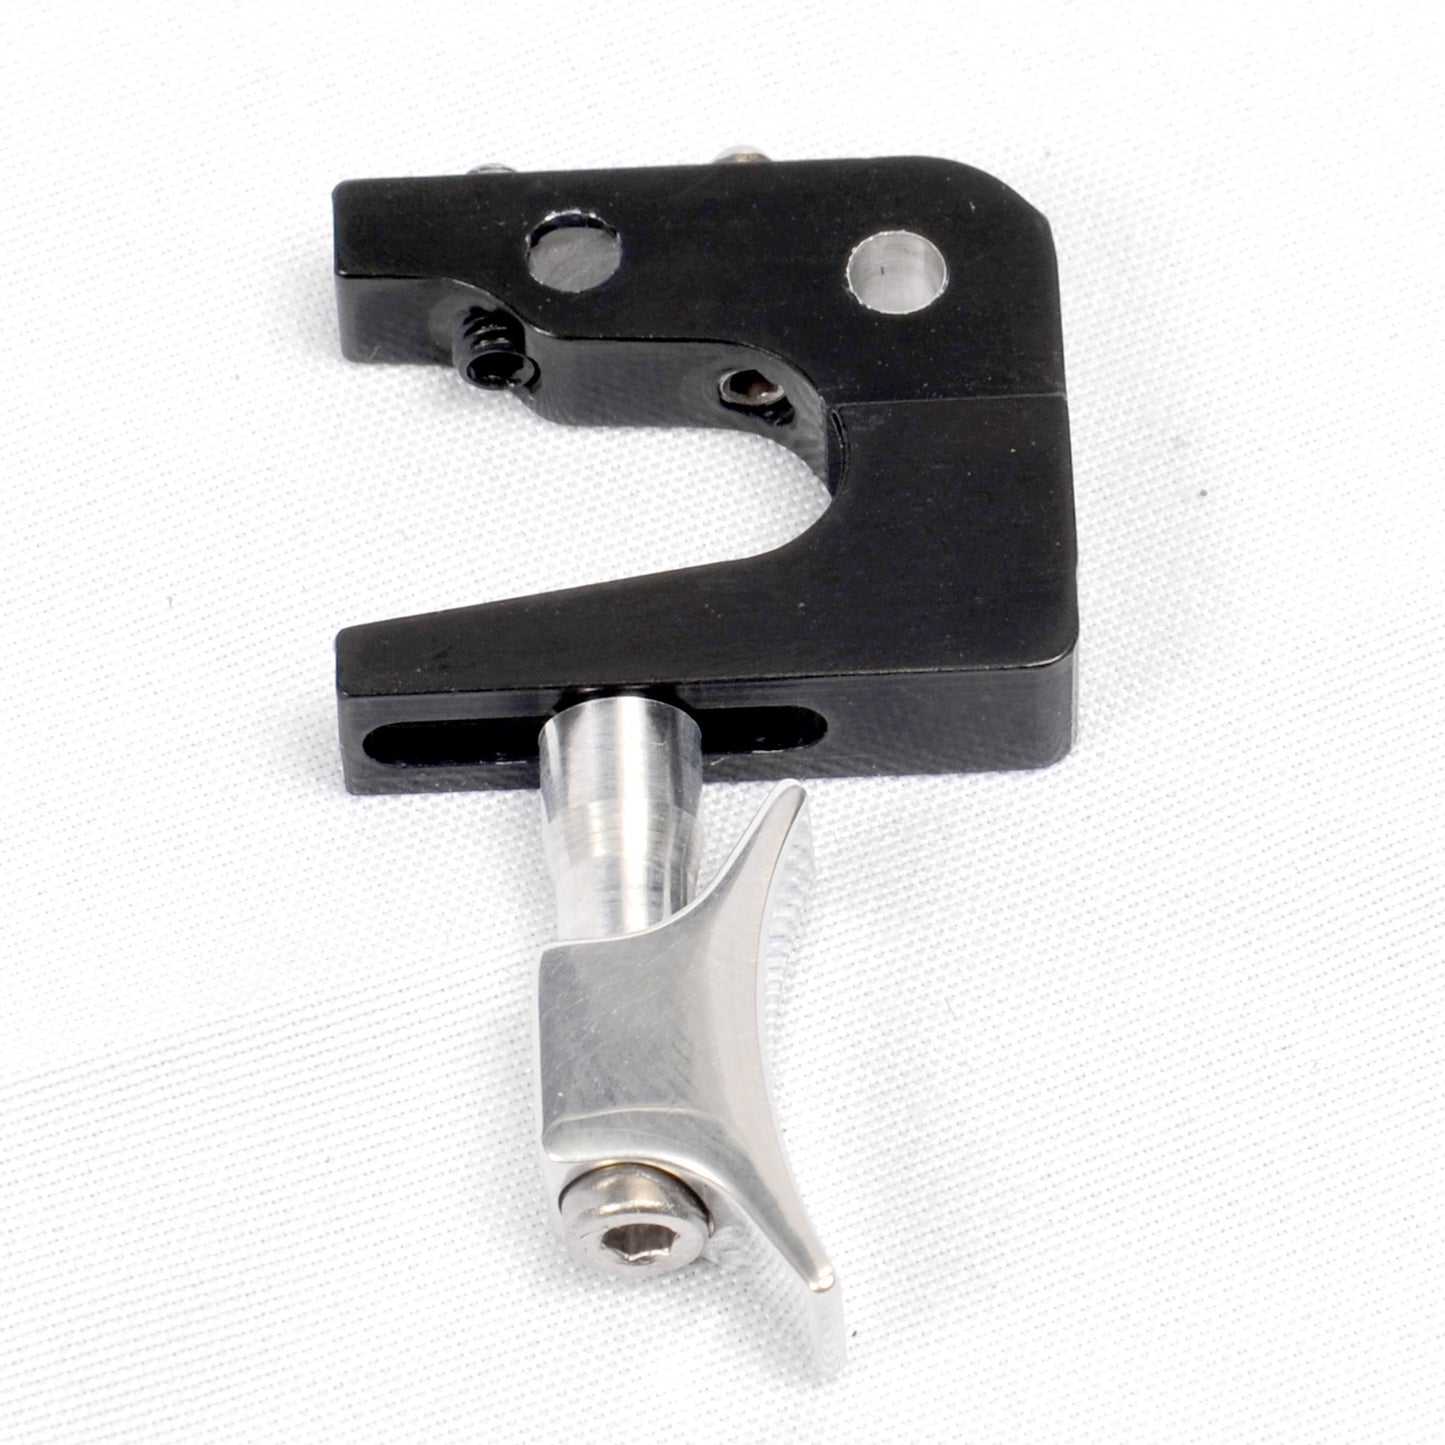 Theoben MK4 Adjustable Trigger. 3.0mm pin